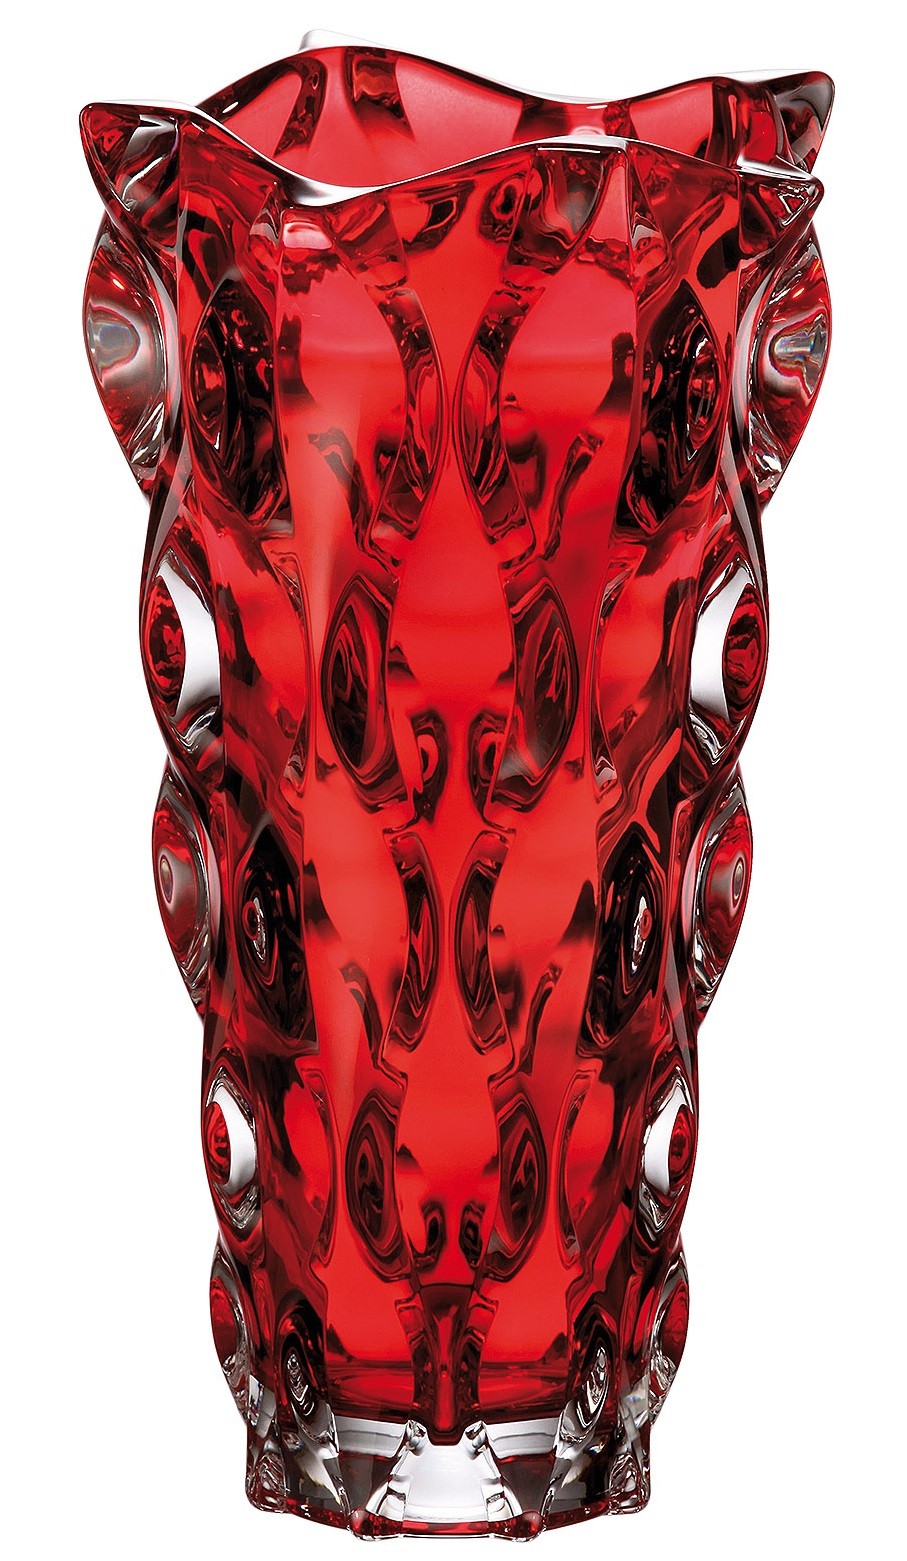 Bohemia Treasury - Vase Samba Red